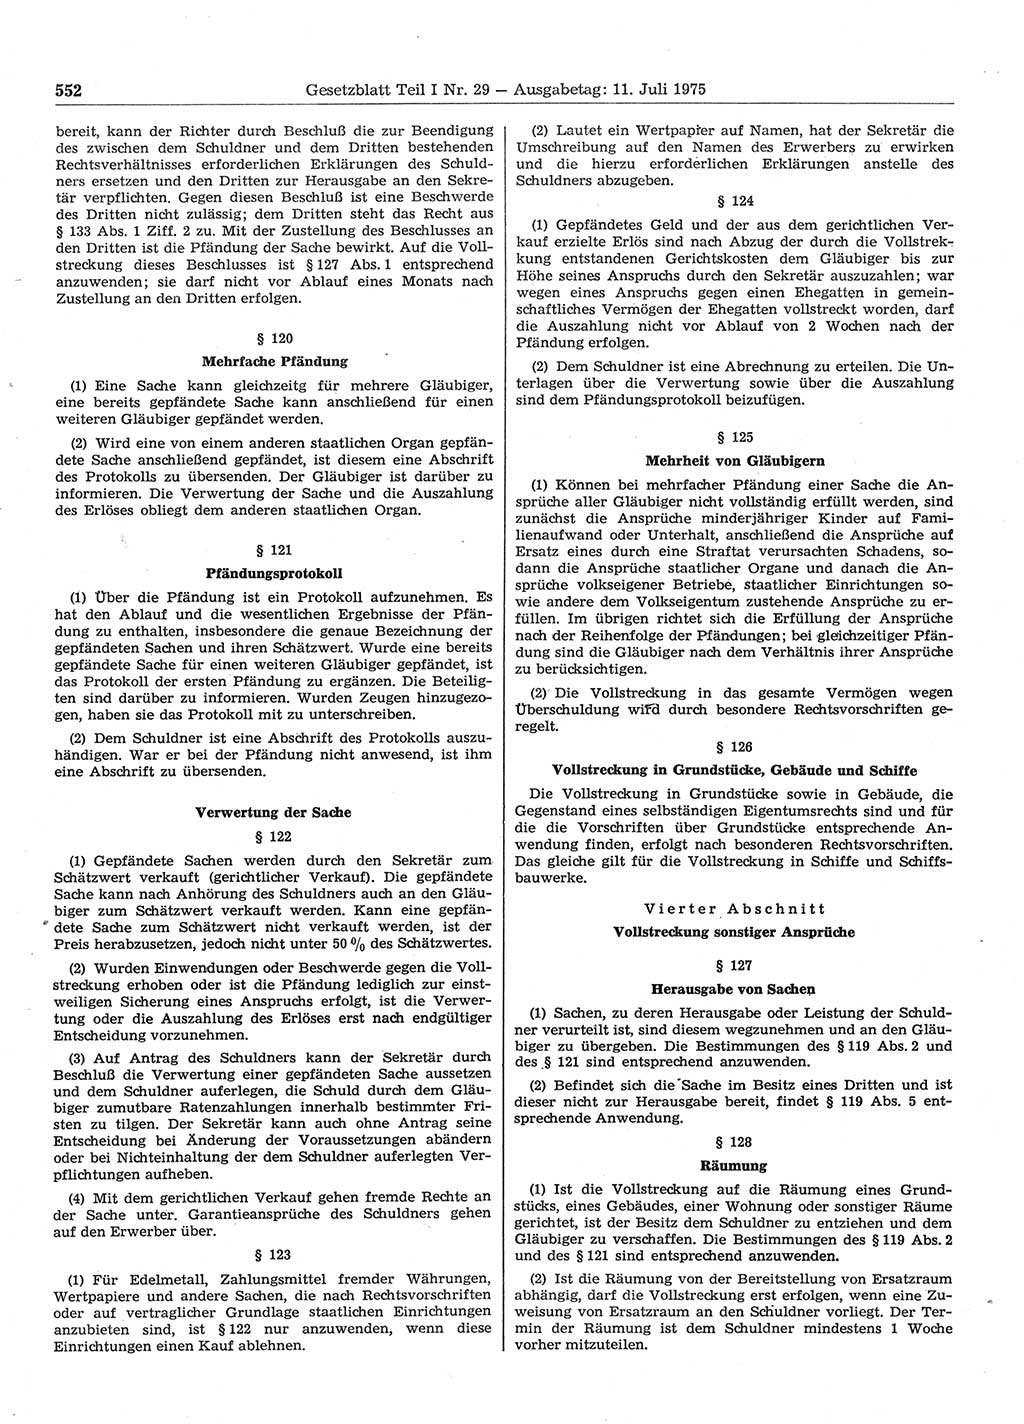 Gesetzblatt (GBl.) der Deutschen Demokratischen Republik (DDR) Teil Ⅰ 1975, Seite 552 (GBl. DDR Ⅰ 1975, S. 552)